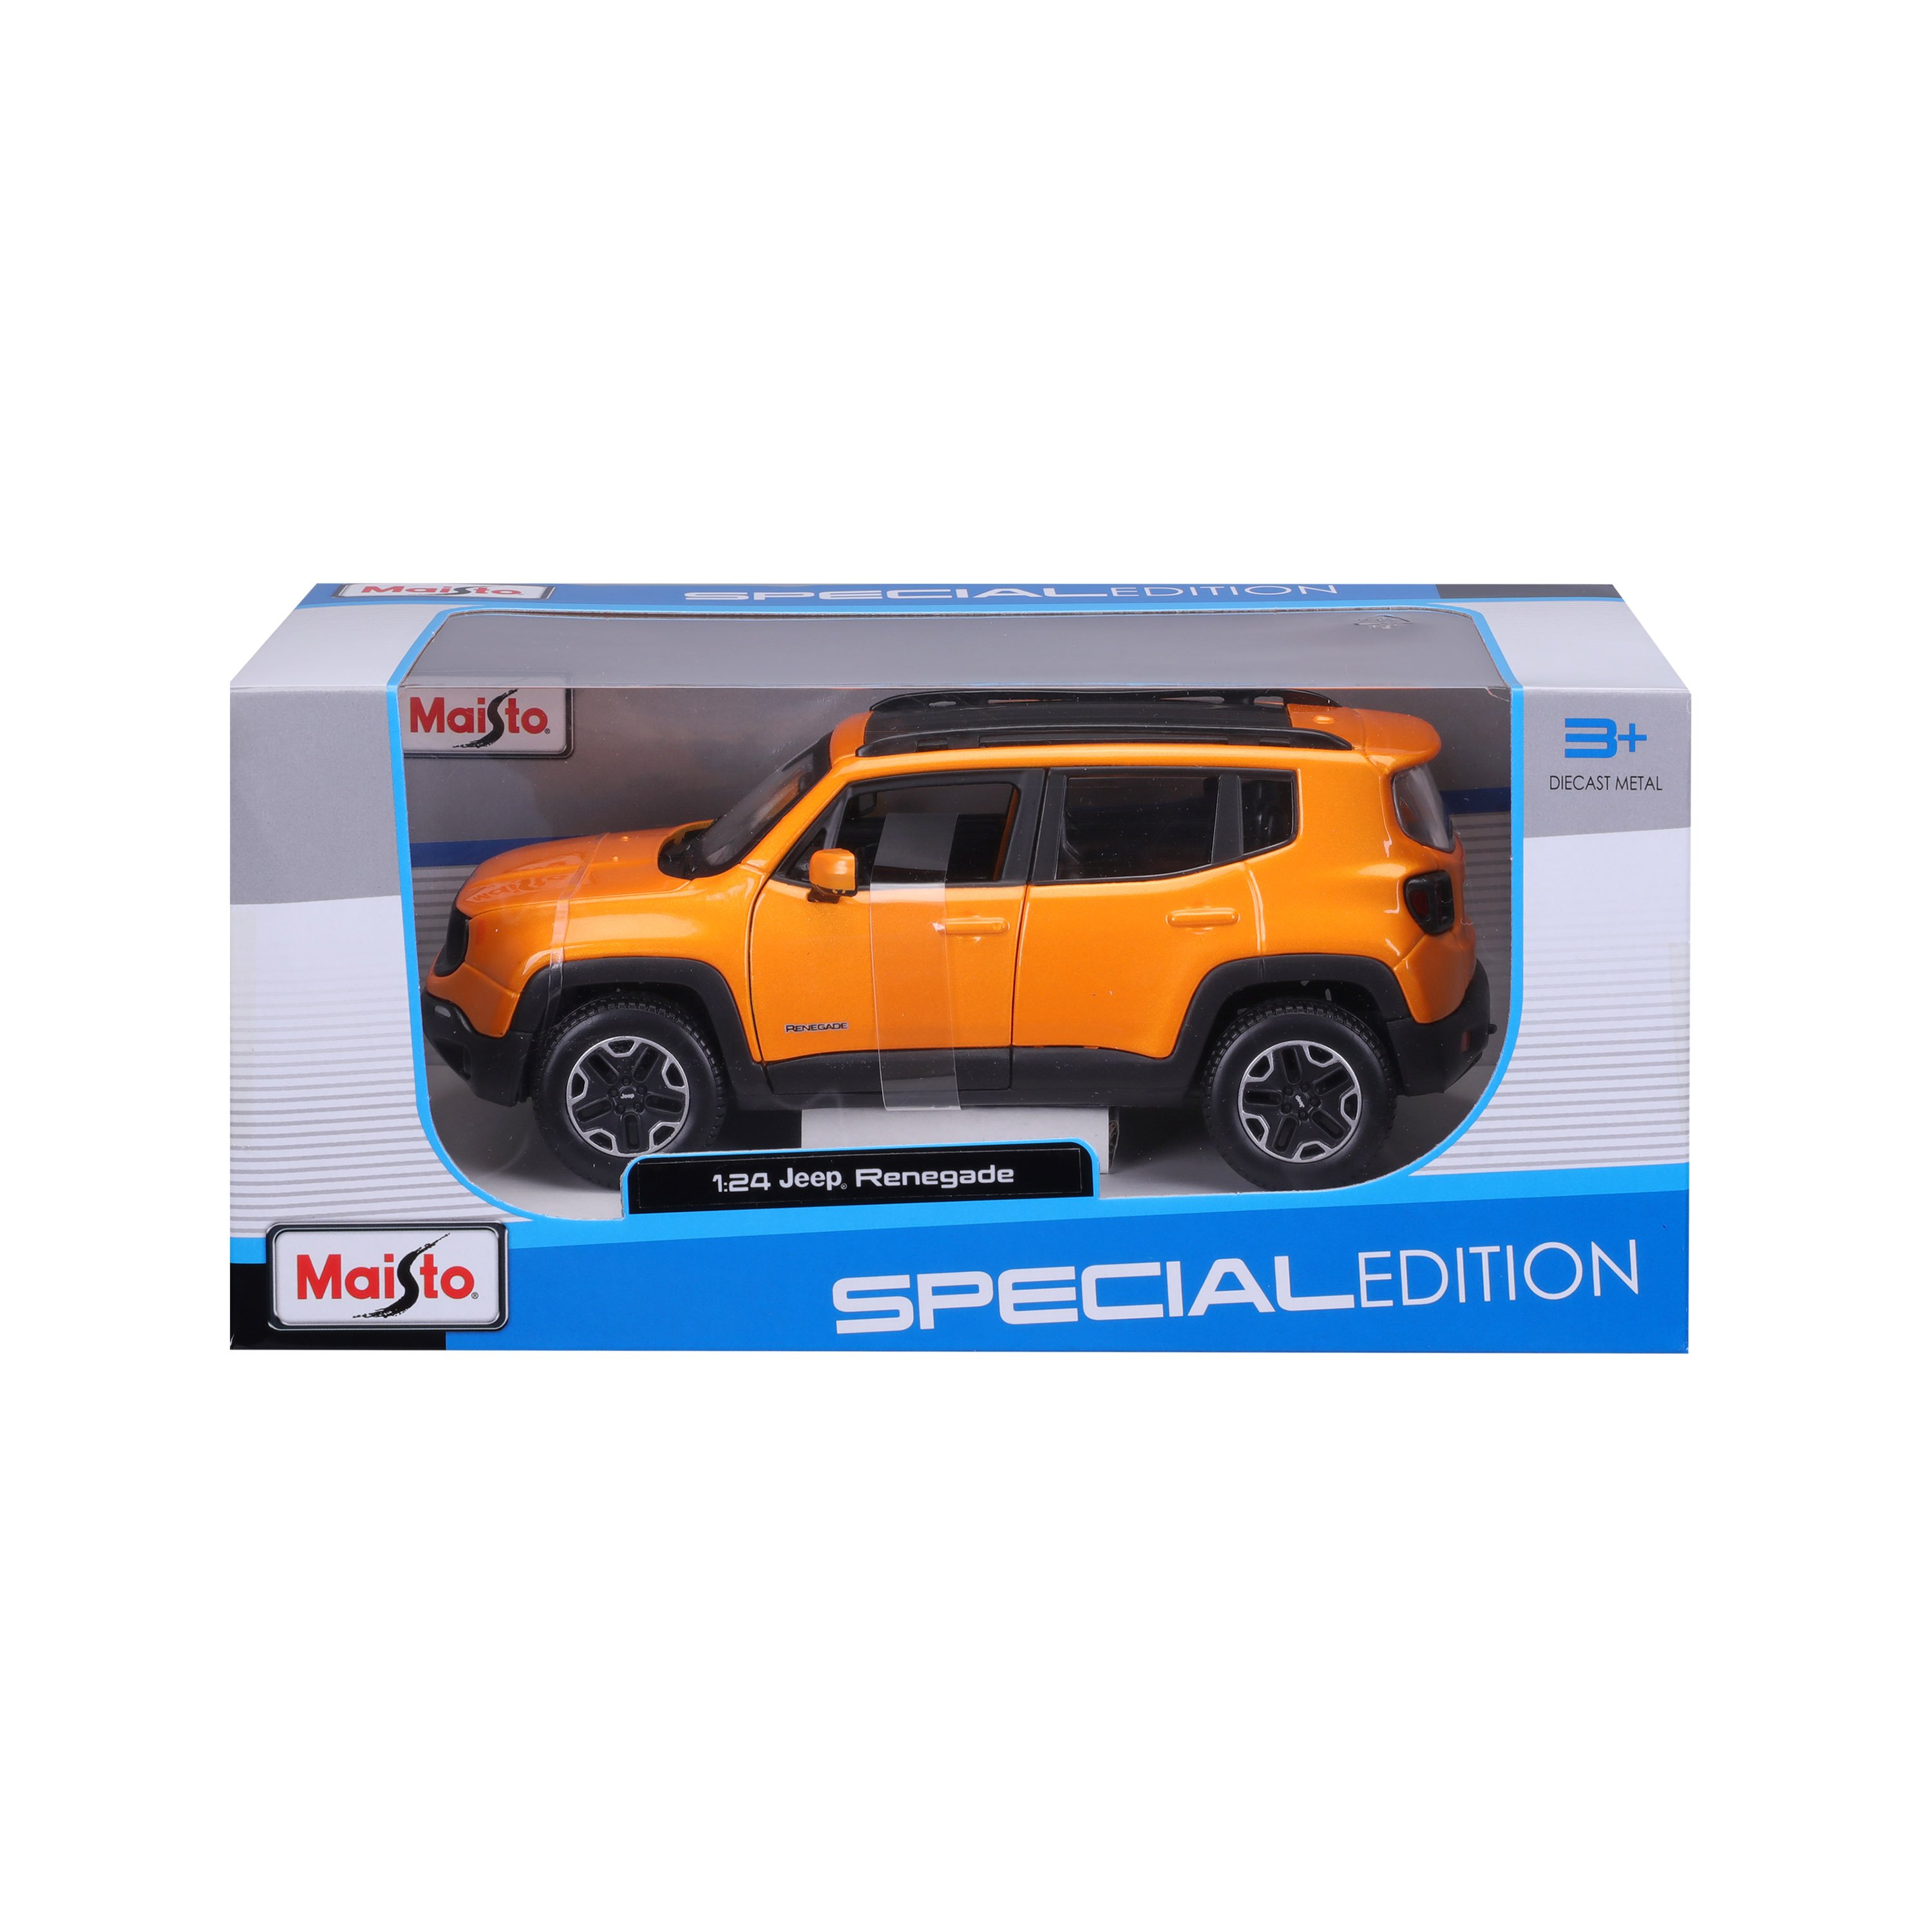 Игровая автомодель Maisto Jeep Renegade, оранжевый металлик, 1:24 (31282 orange) - фото 2